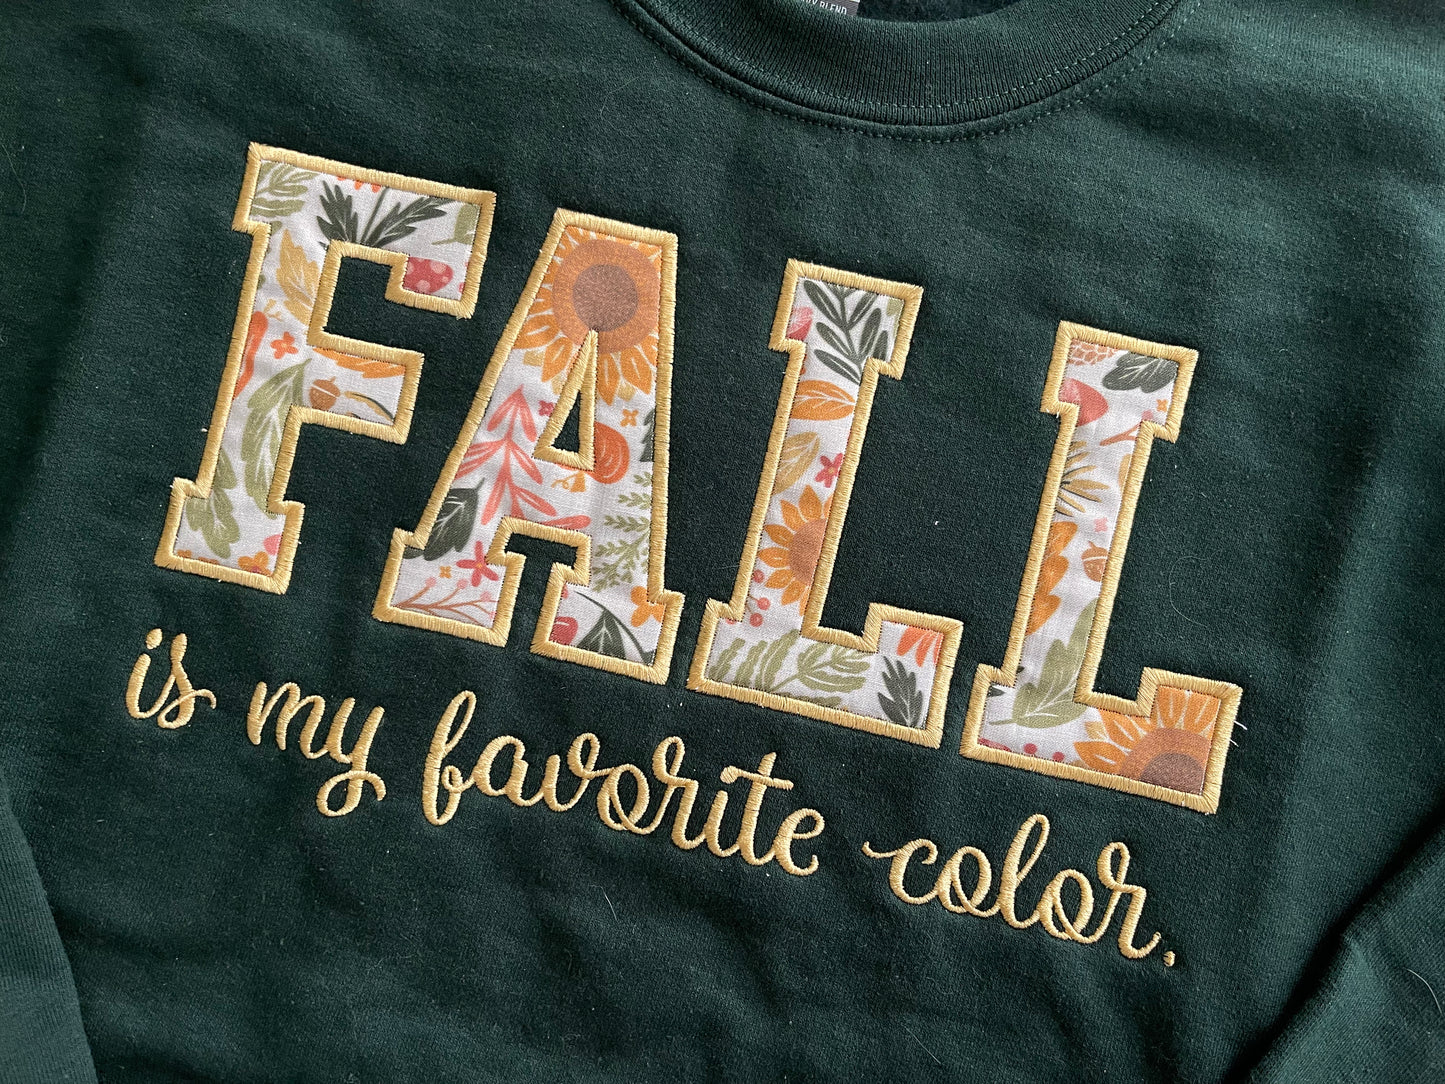 FALL | appliquéd sweatshirts